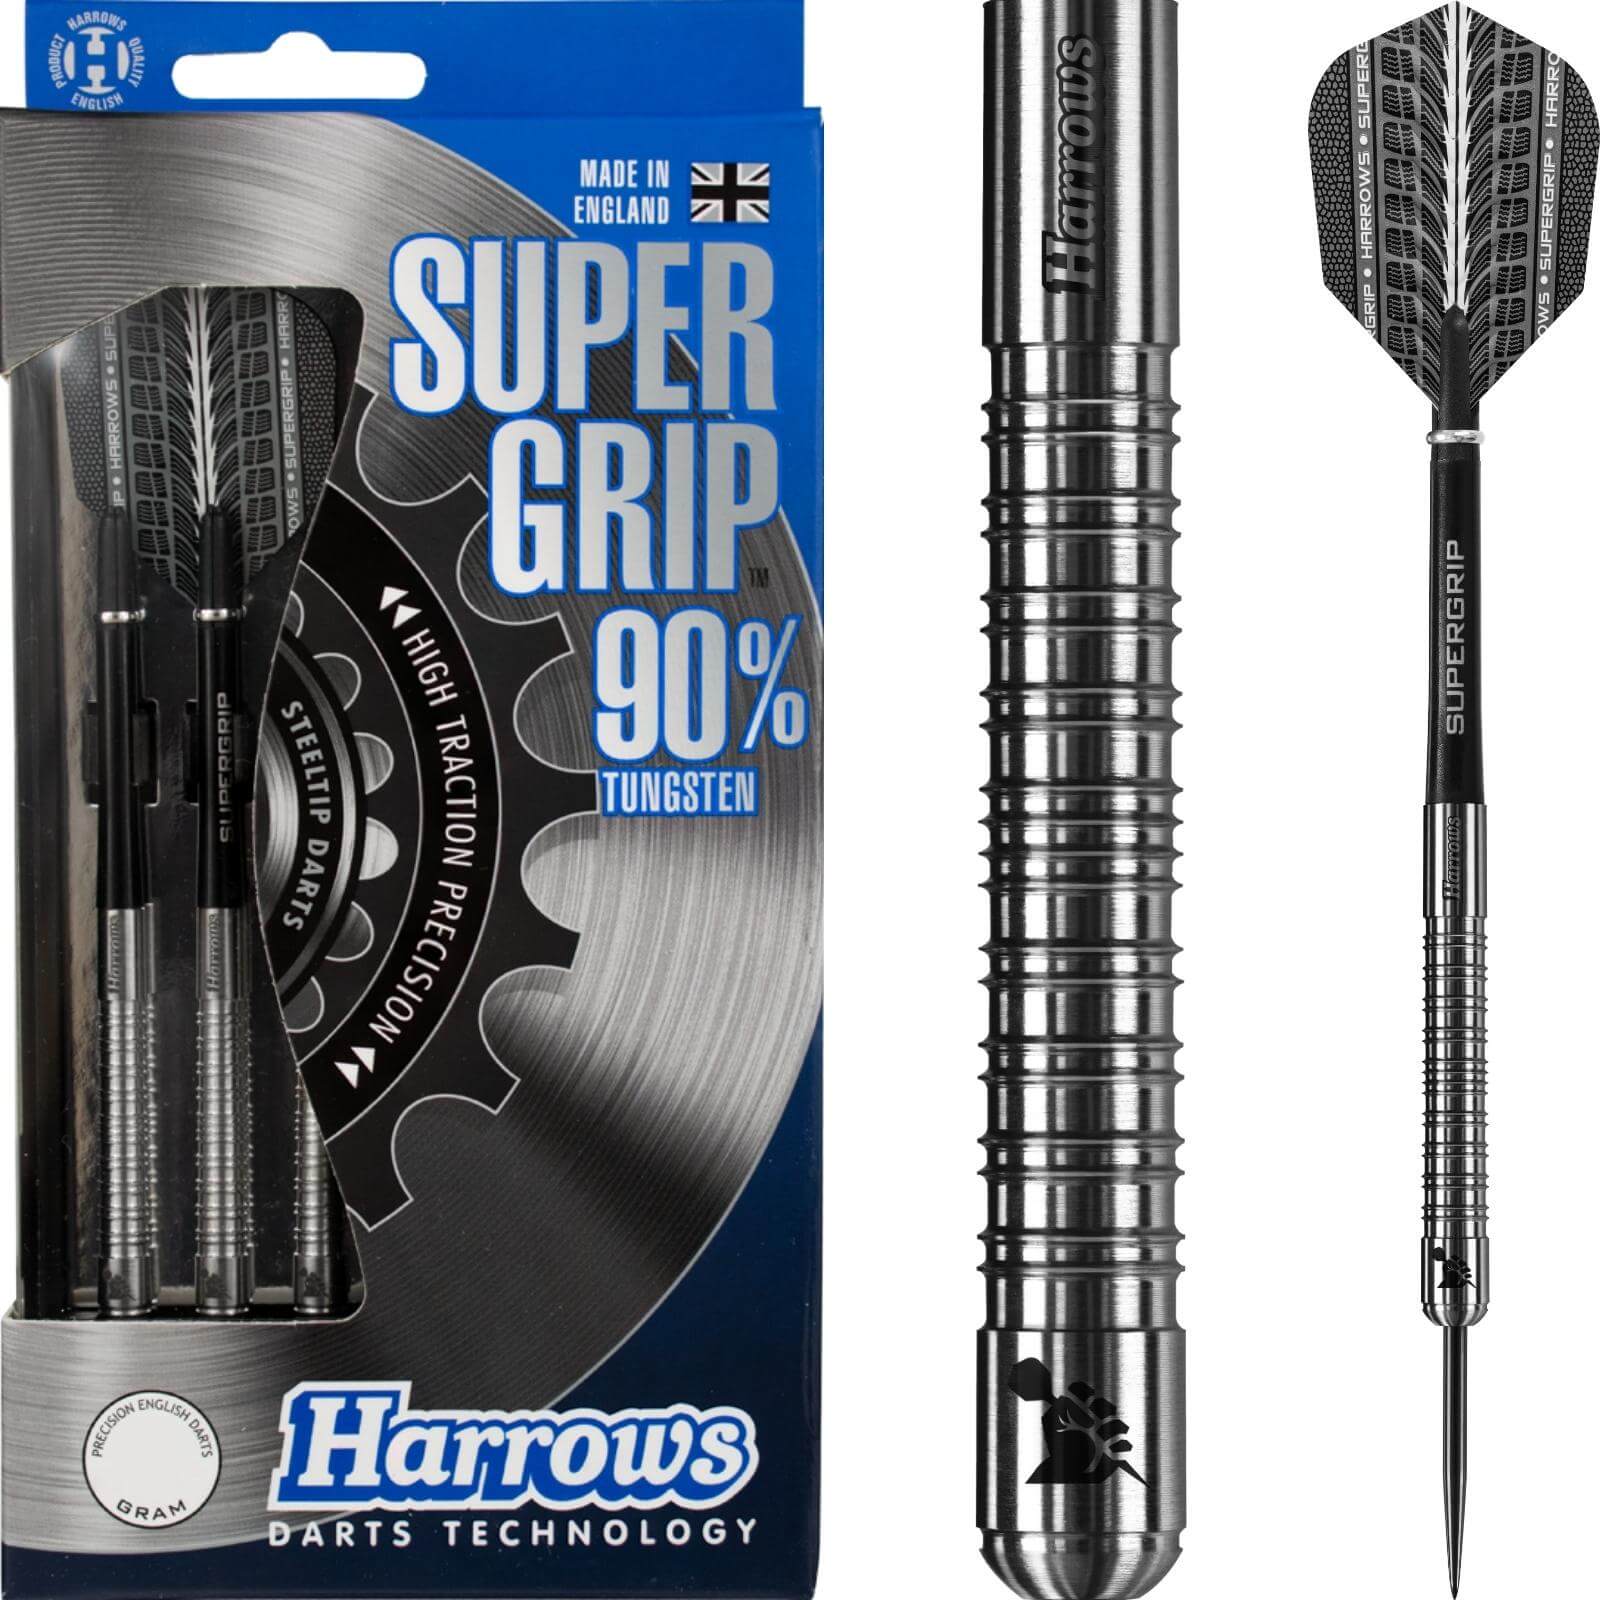 Darts - Harrows - Supergrip Darts - Steel Tip - 90% Tungsten - 21g 22g 23g 24g 25g 26g 28g 30g 